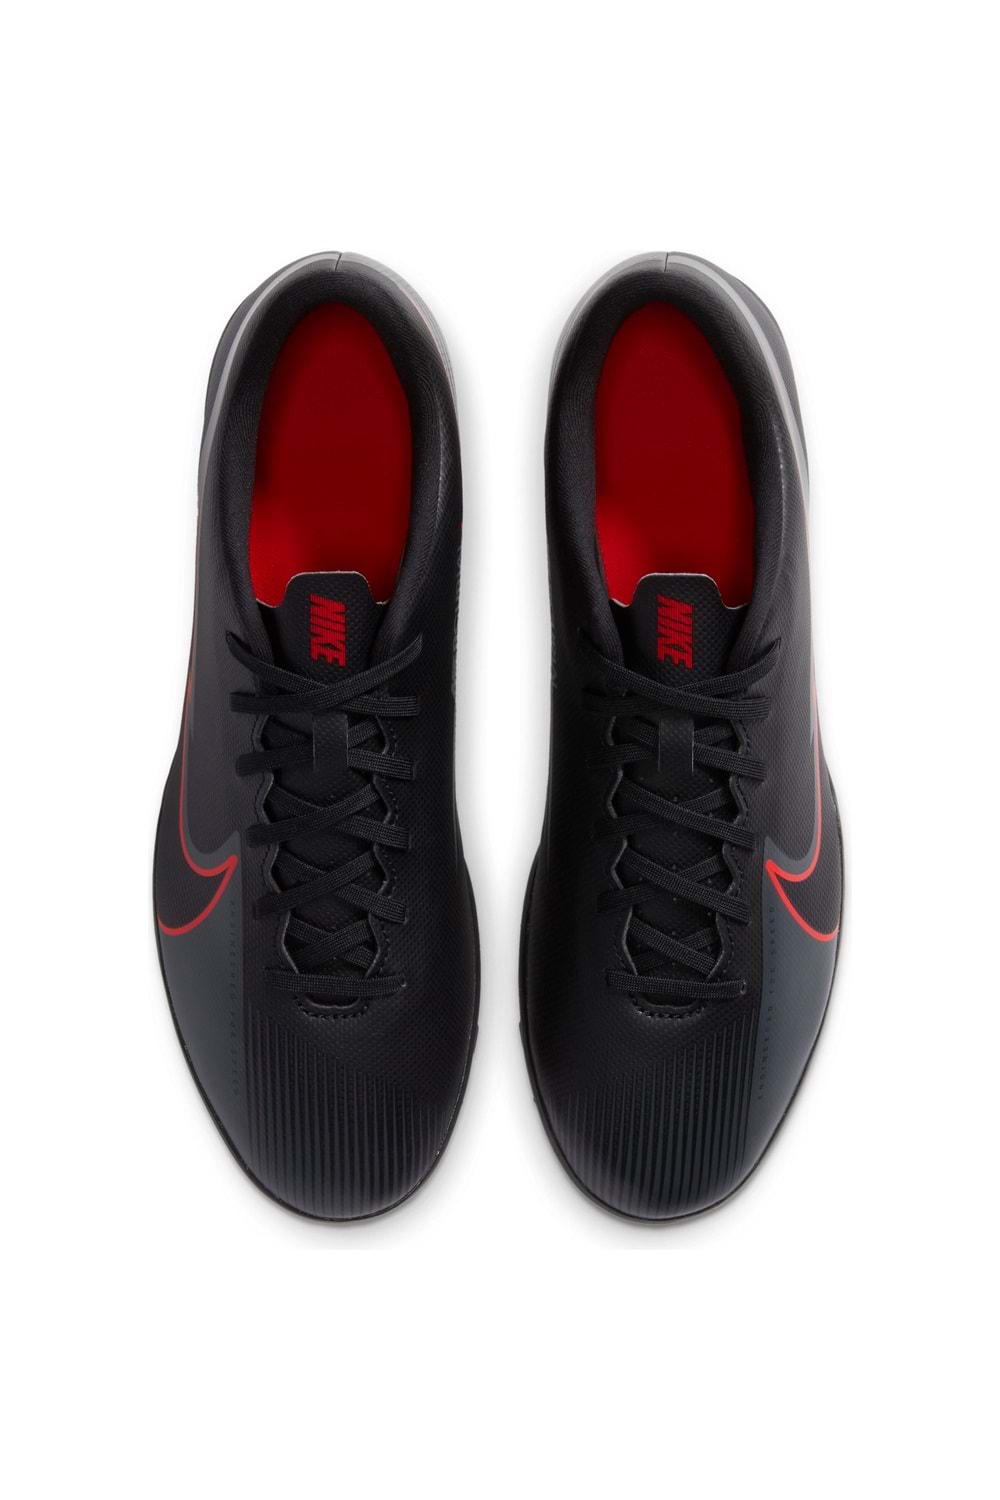 Nike Vapor 13 Club TF Erkek Futbol Ayakkabısı AT7999-060